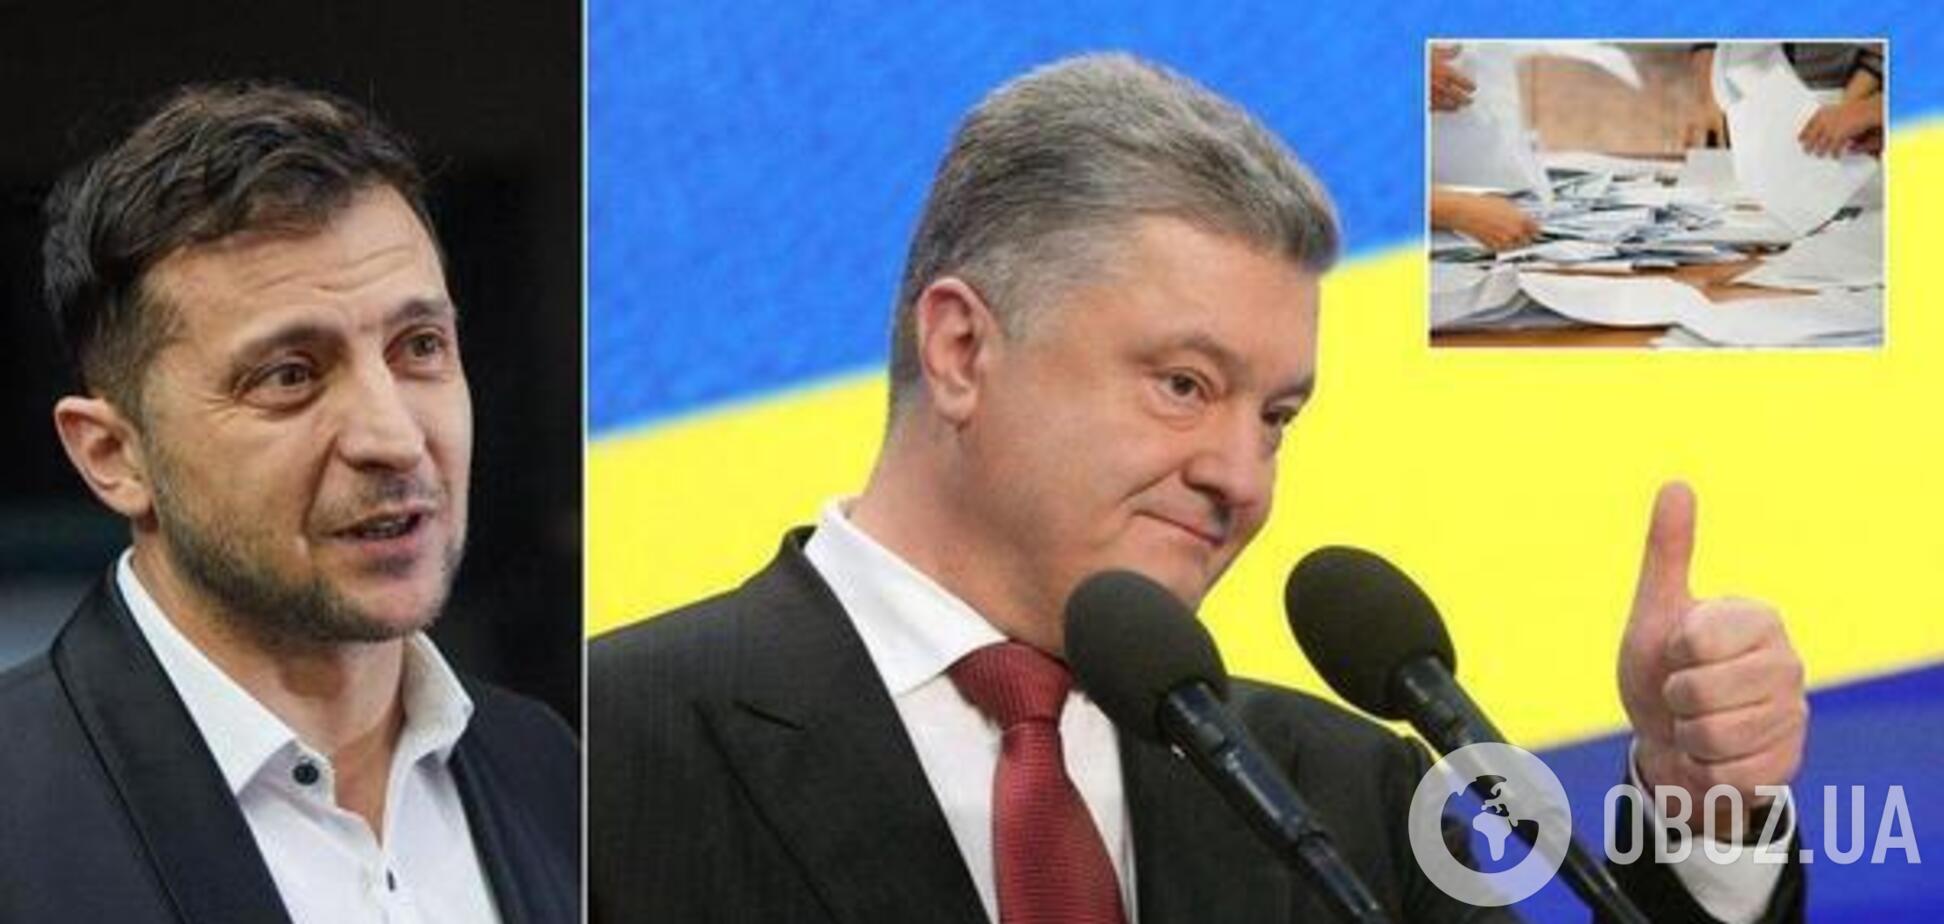 Дебаты Порошенко и Зеленского оценили в 1 млн долларов